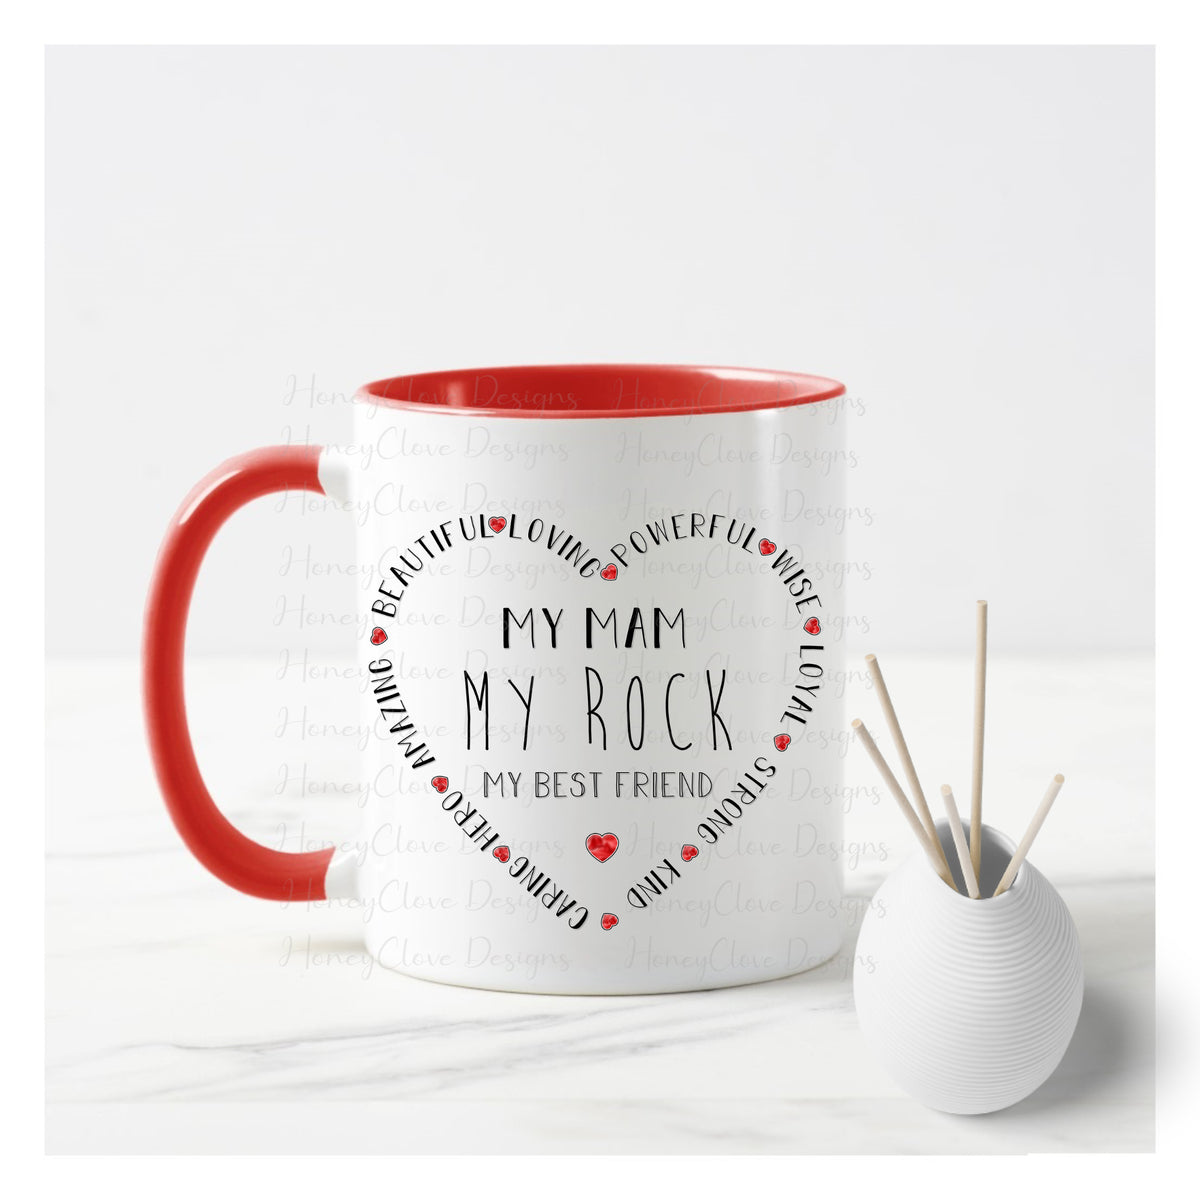 My Mum/Mam/Nana is my Rock Mug – HoneyClove Designs